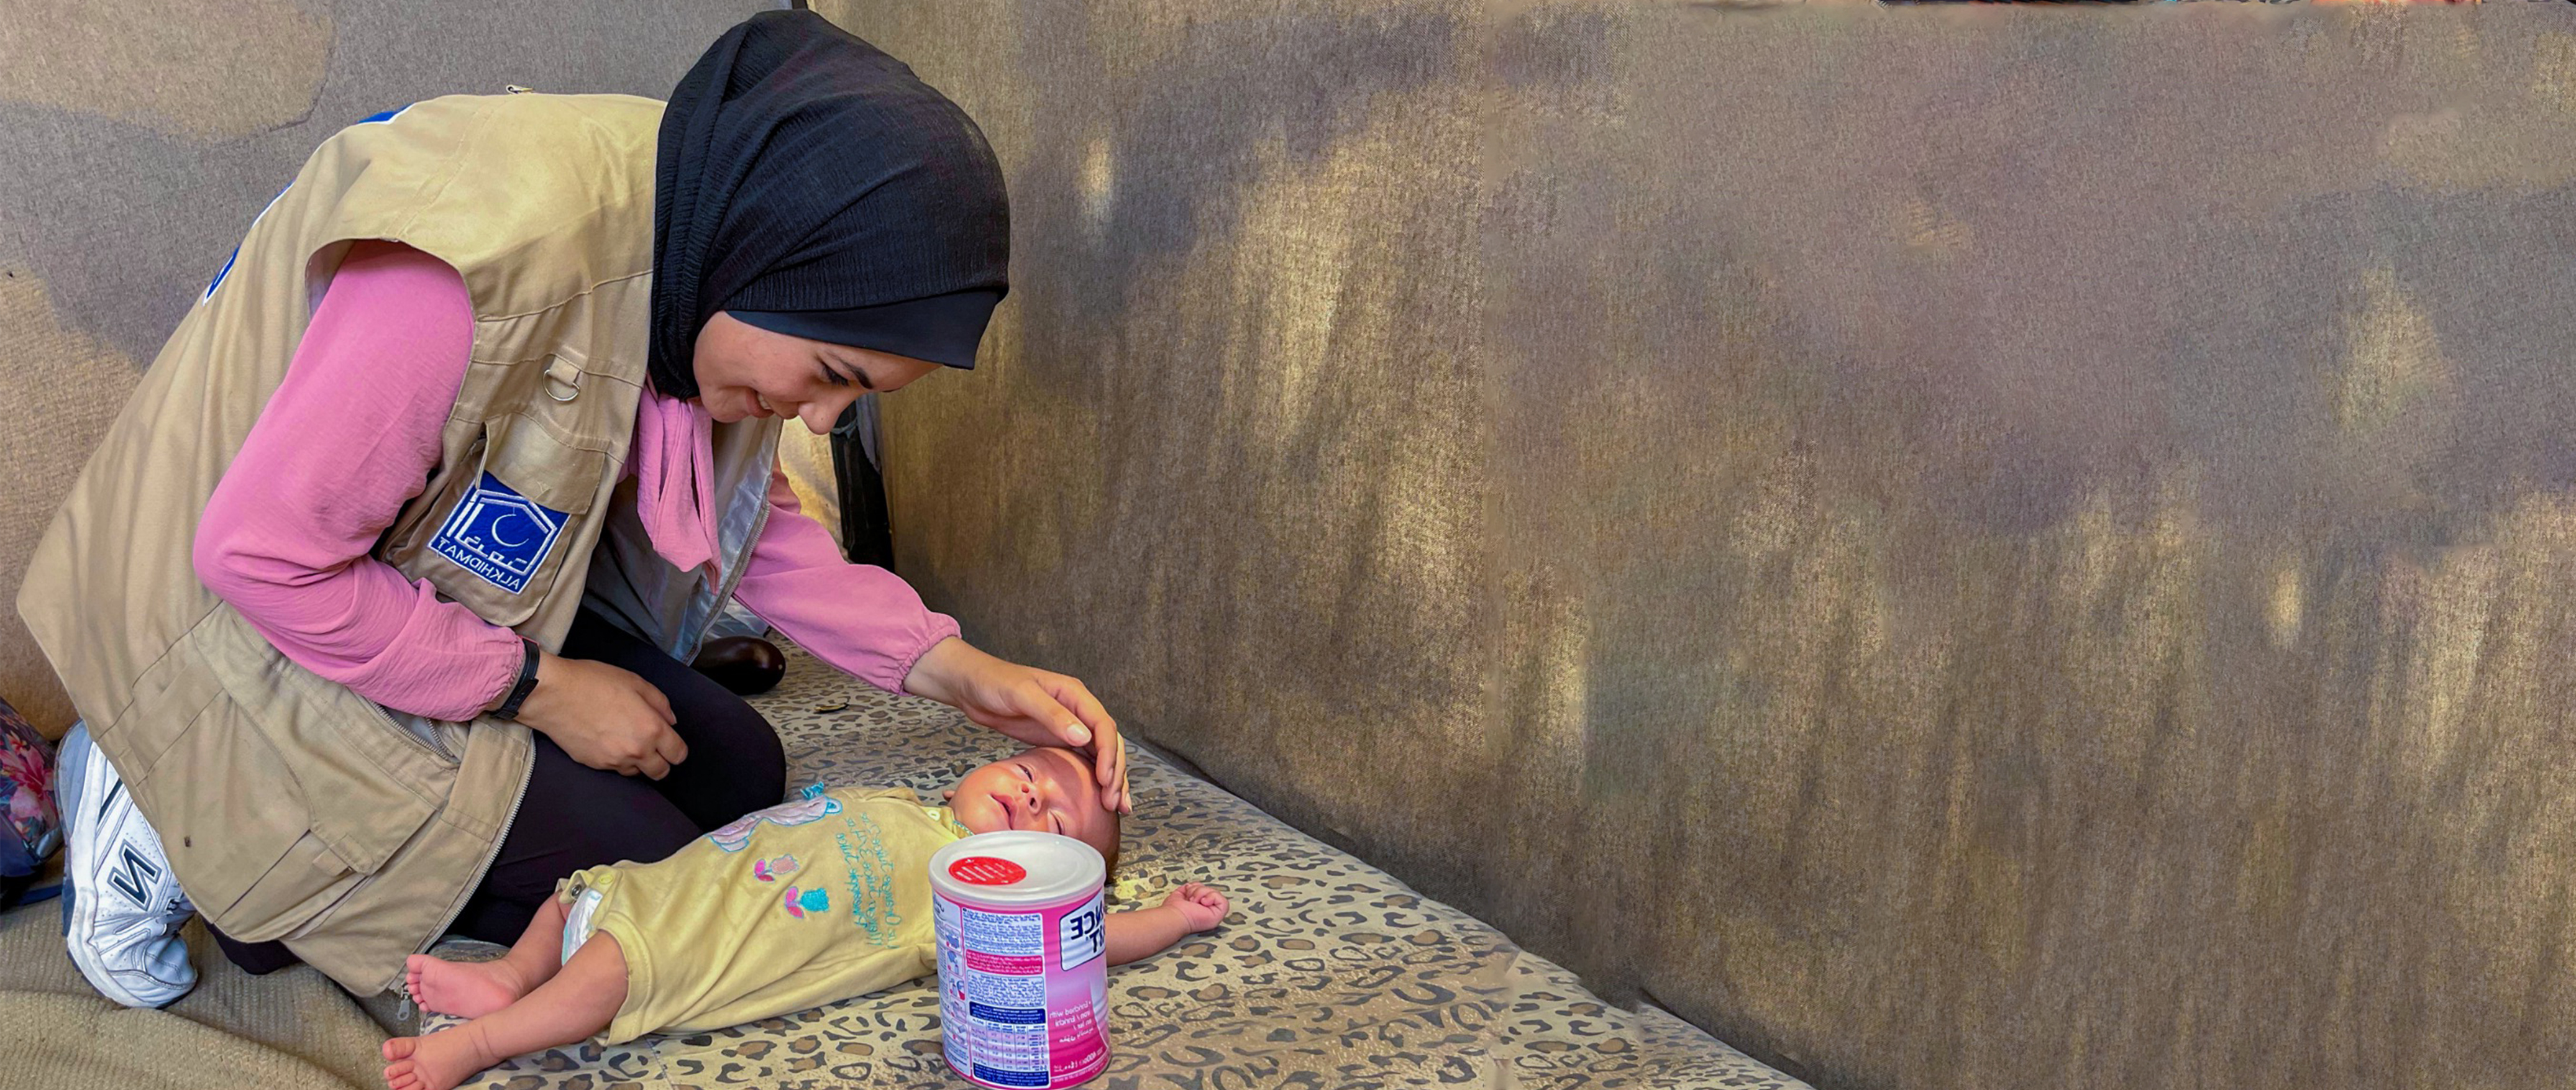 الخدمت فاؤنڈیشن پاکستان کے  تحت  غزہ میں نوزائیدہ اور معصوم بچوں میں دودھ تقسیم